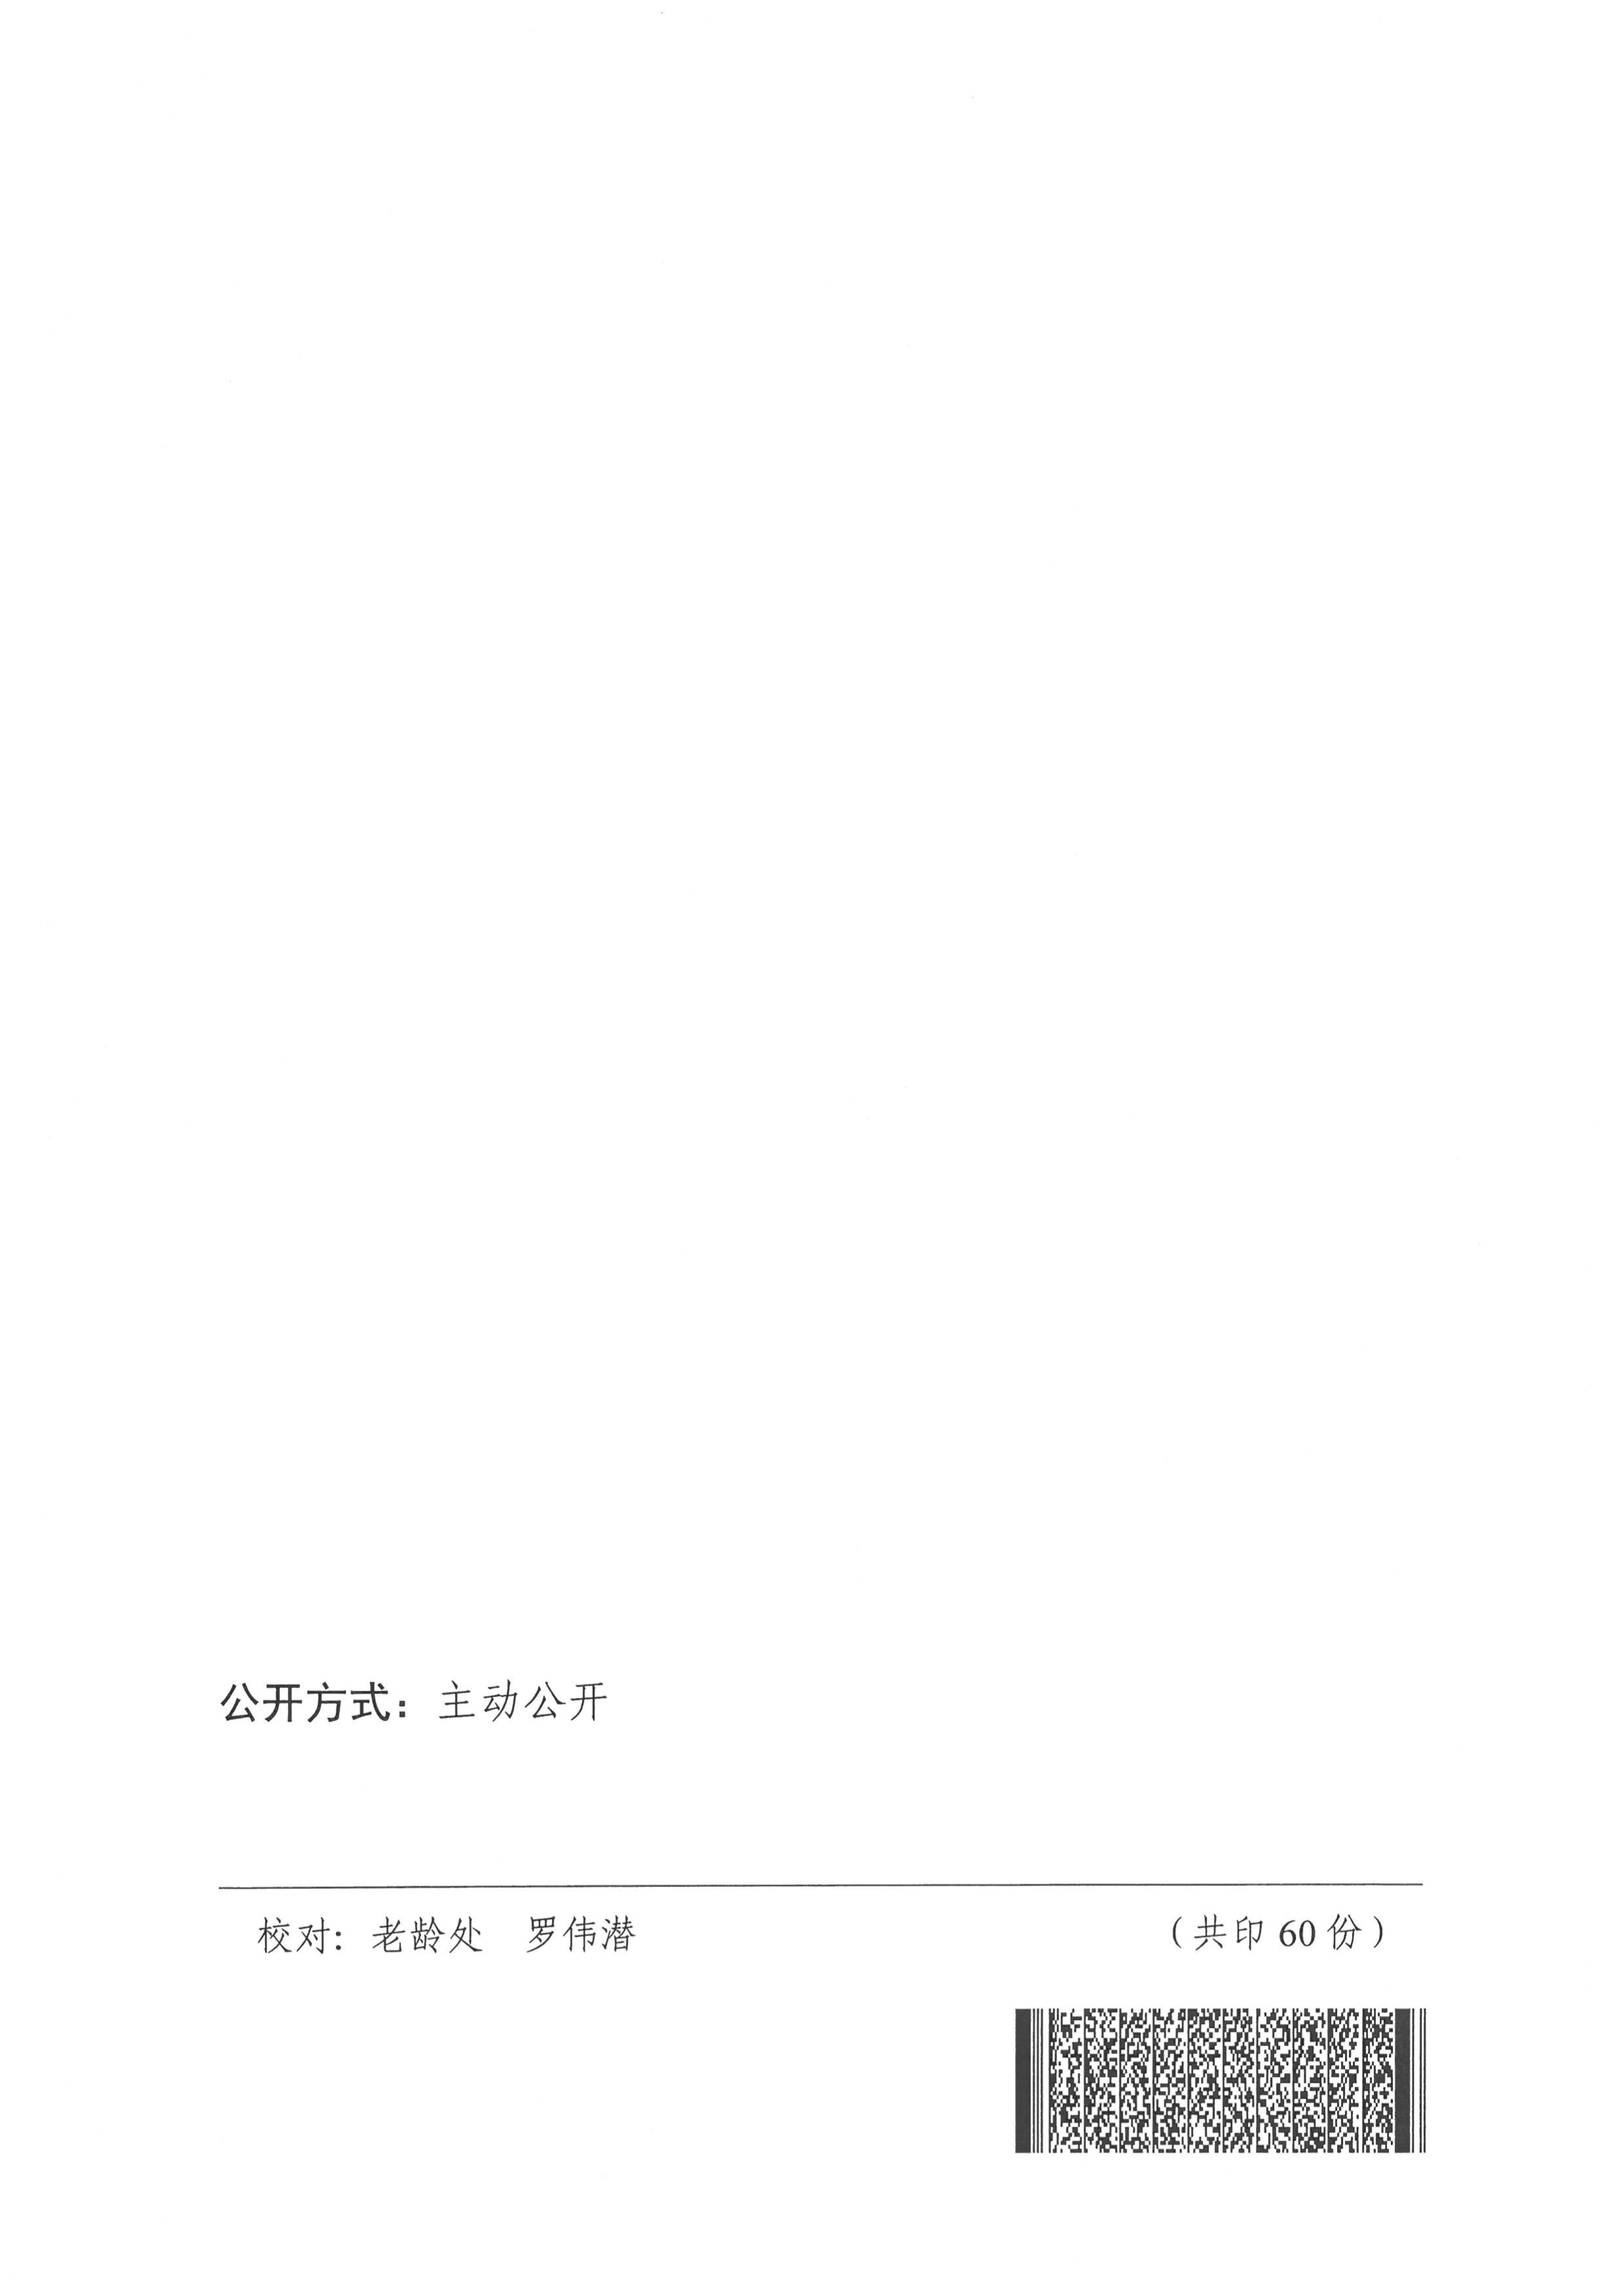 （正式件）广东省老龄工作办公室关于做好老年人冬春季新冠肺炎疫情防控工作的通知 - 副本_1.jpg